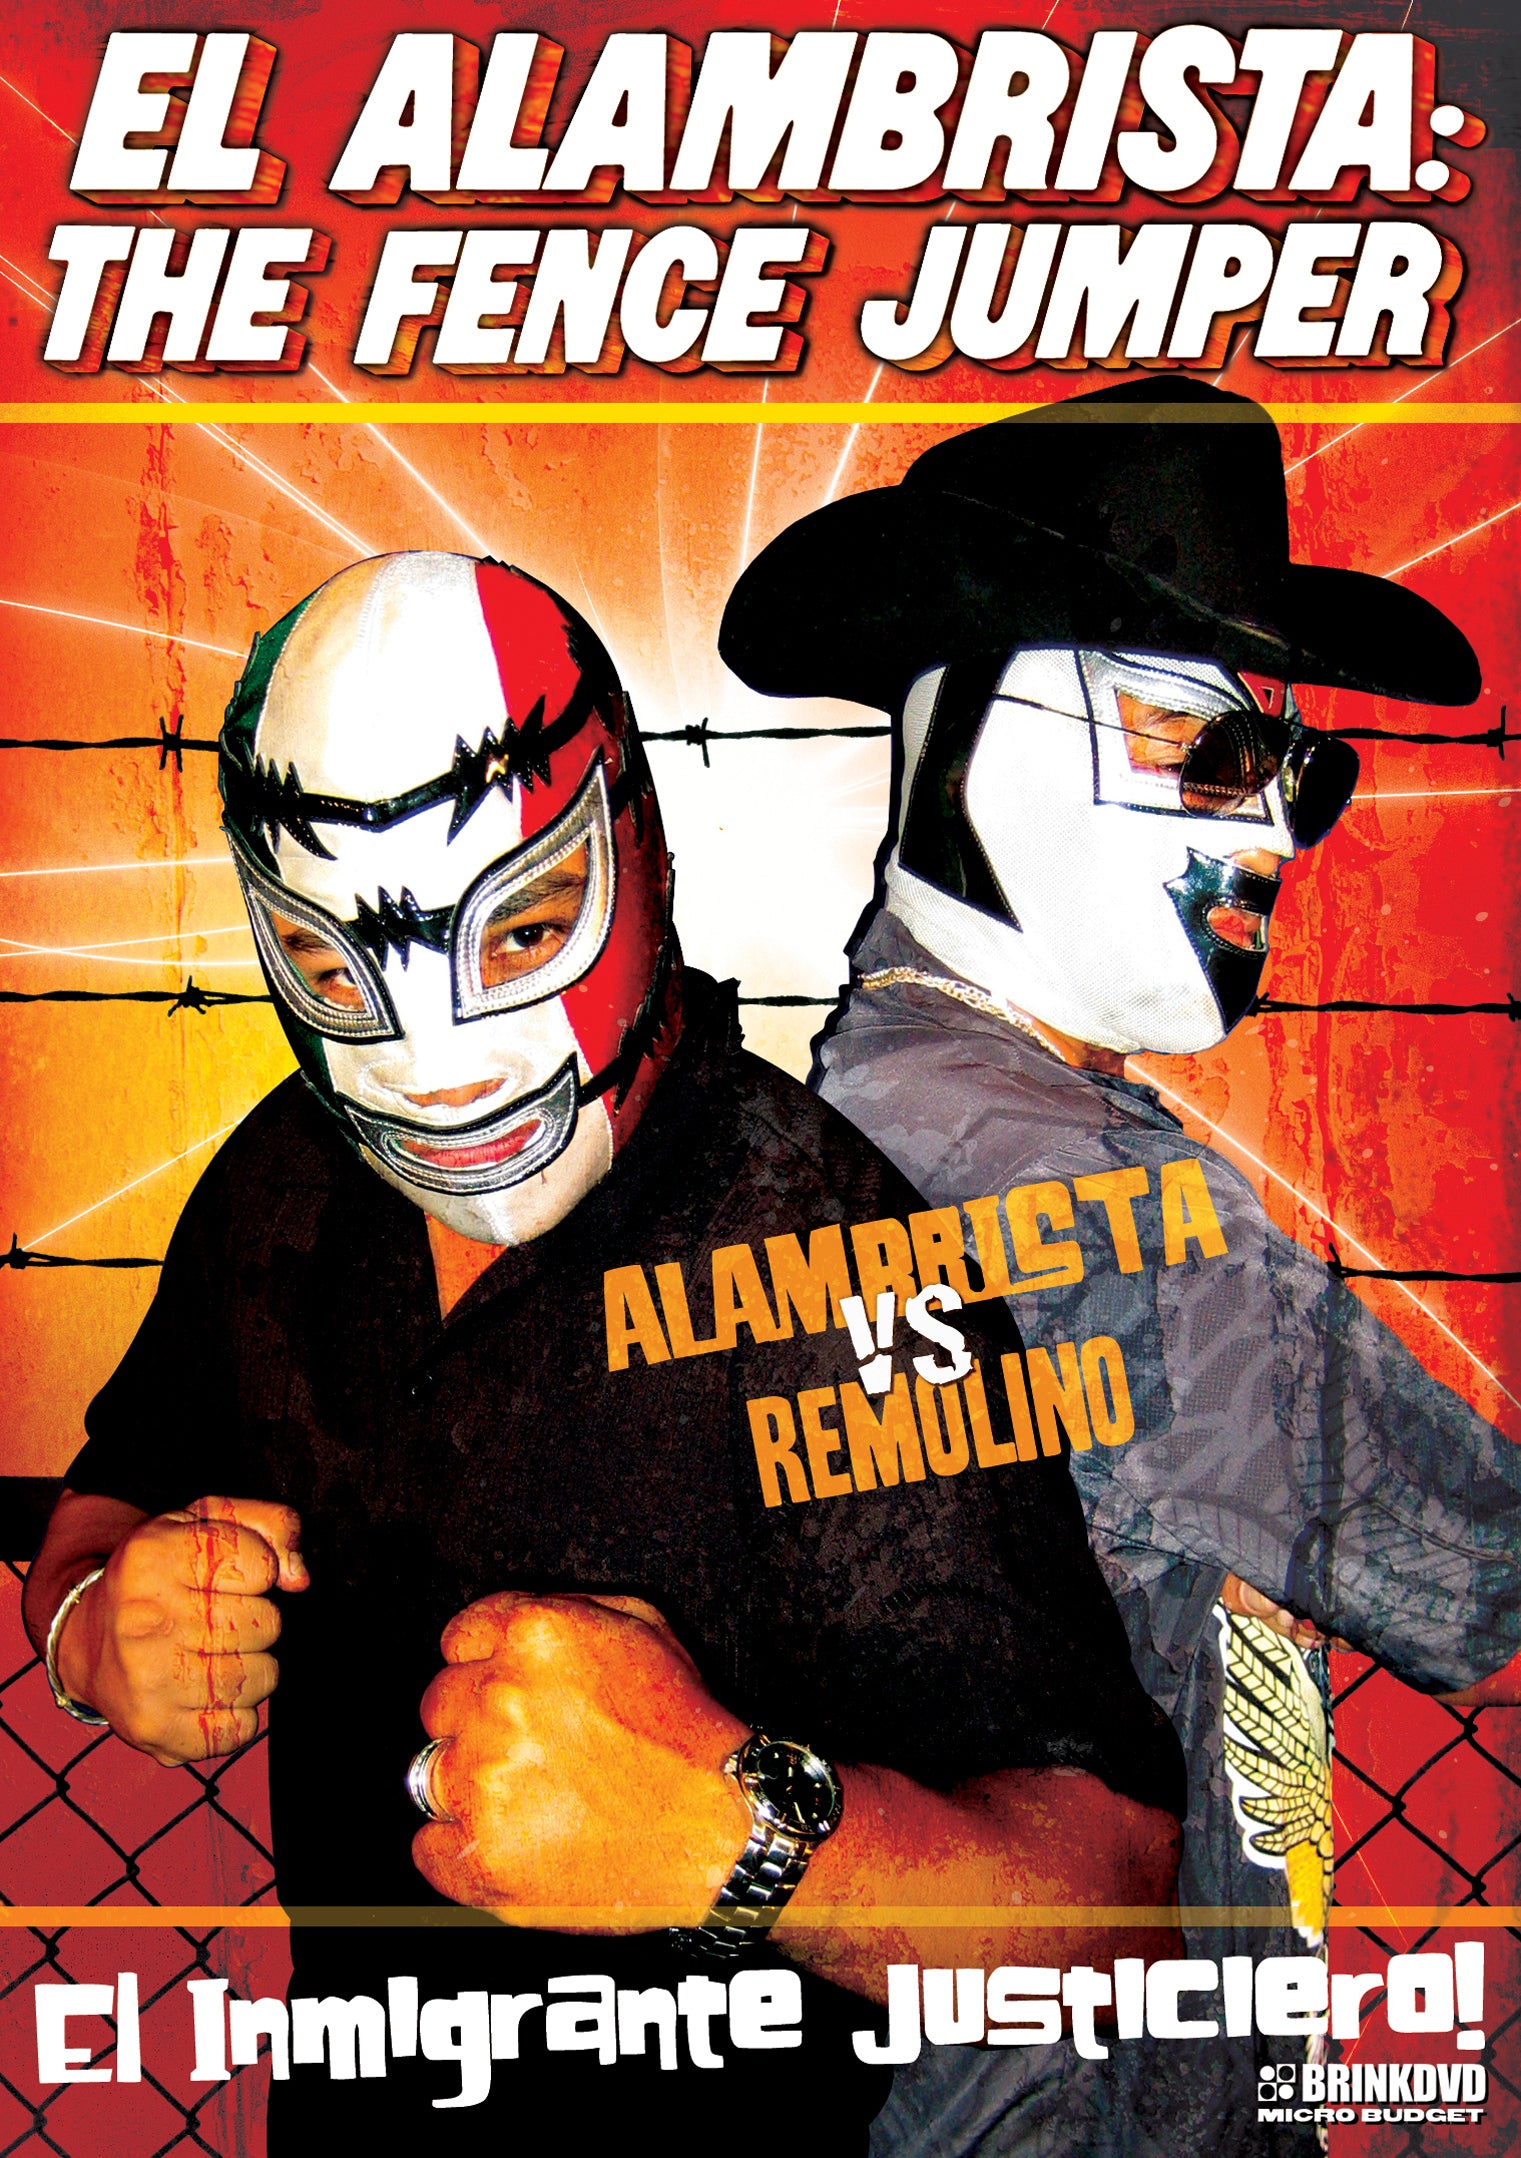 El Alambrista: The Fence Jumper (DVD)